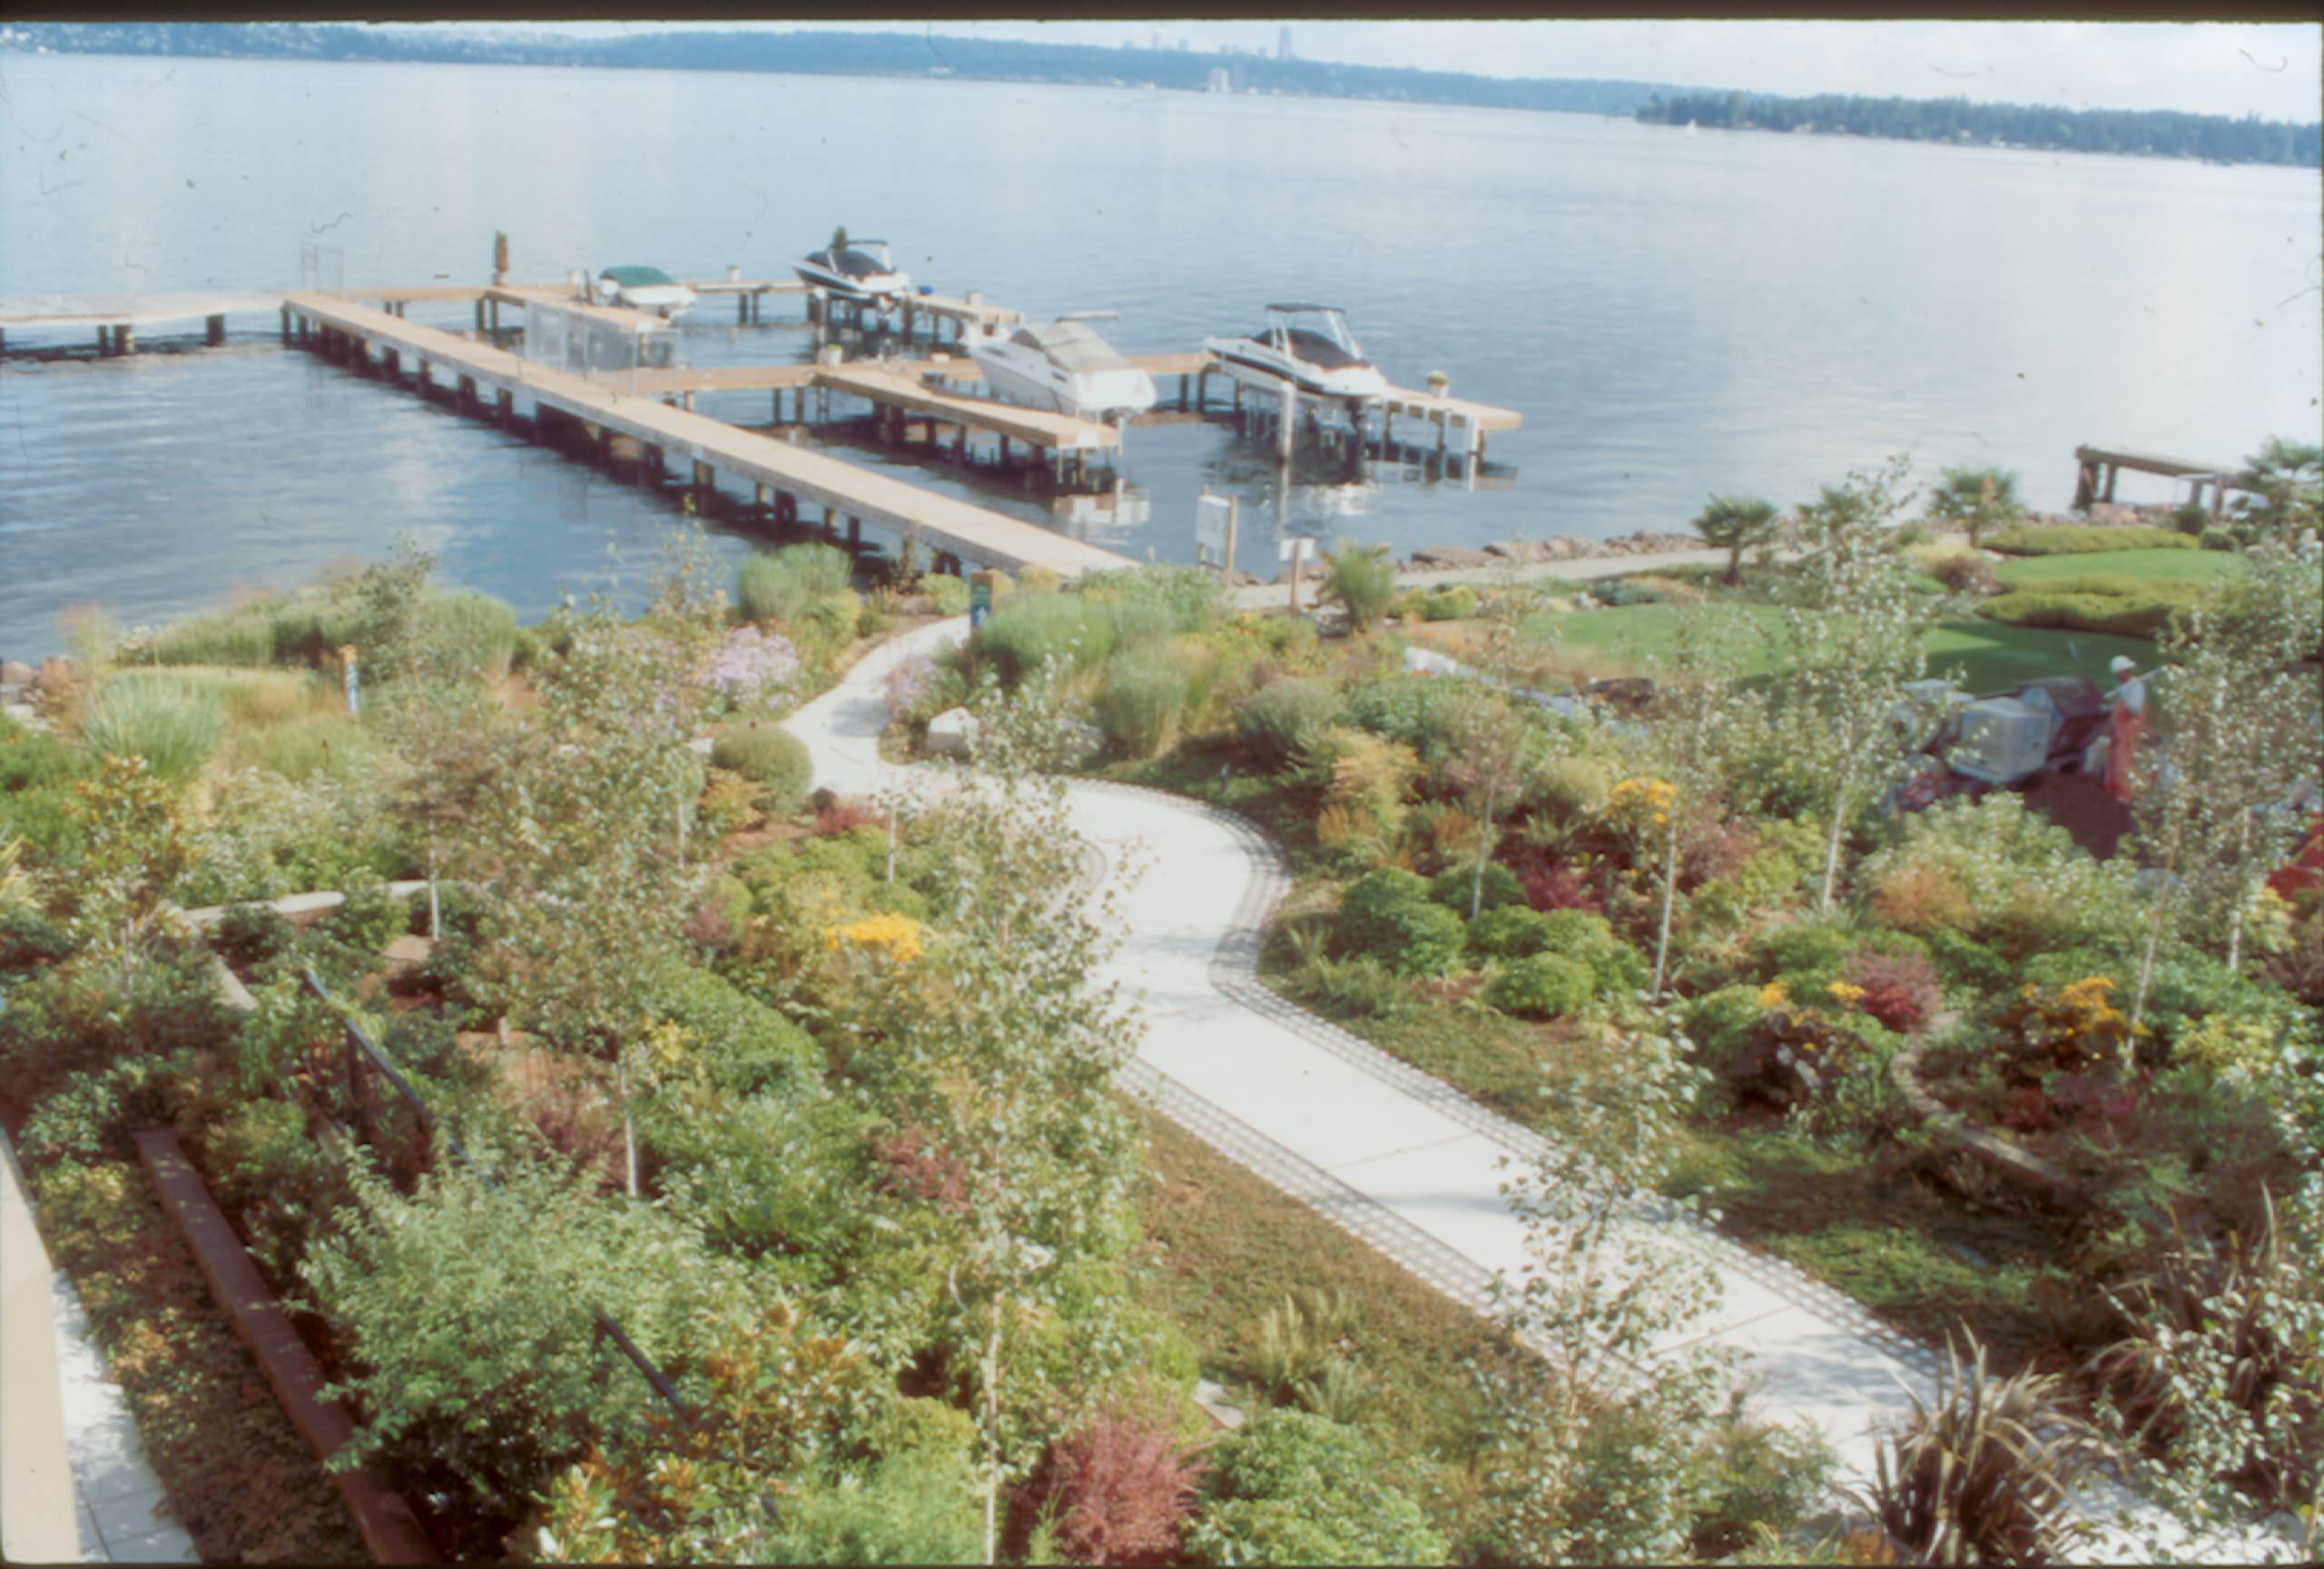 Settler's Landing Park and wharf